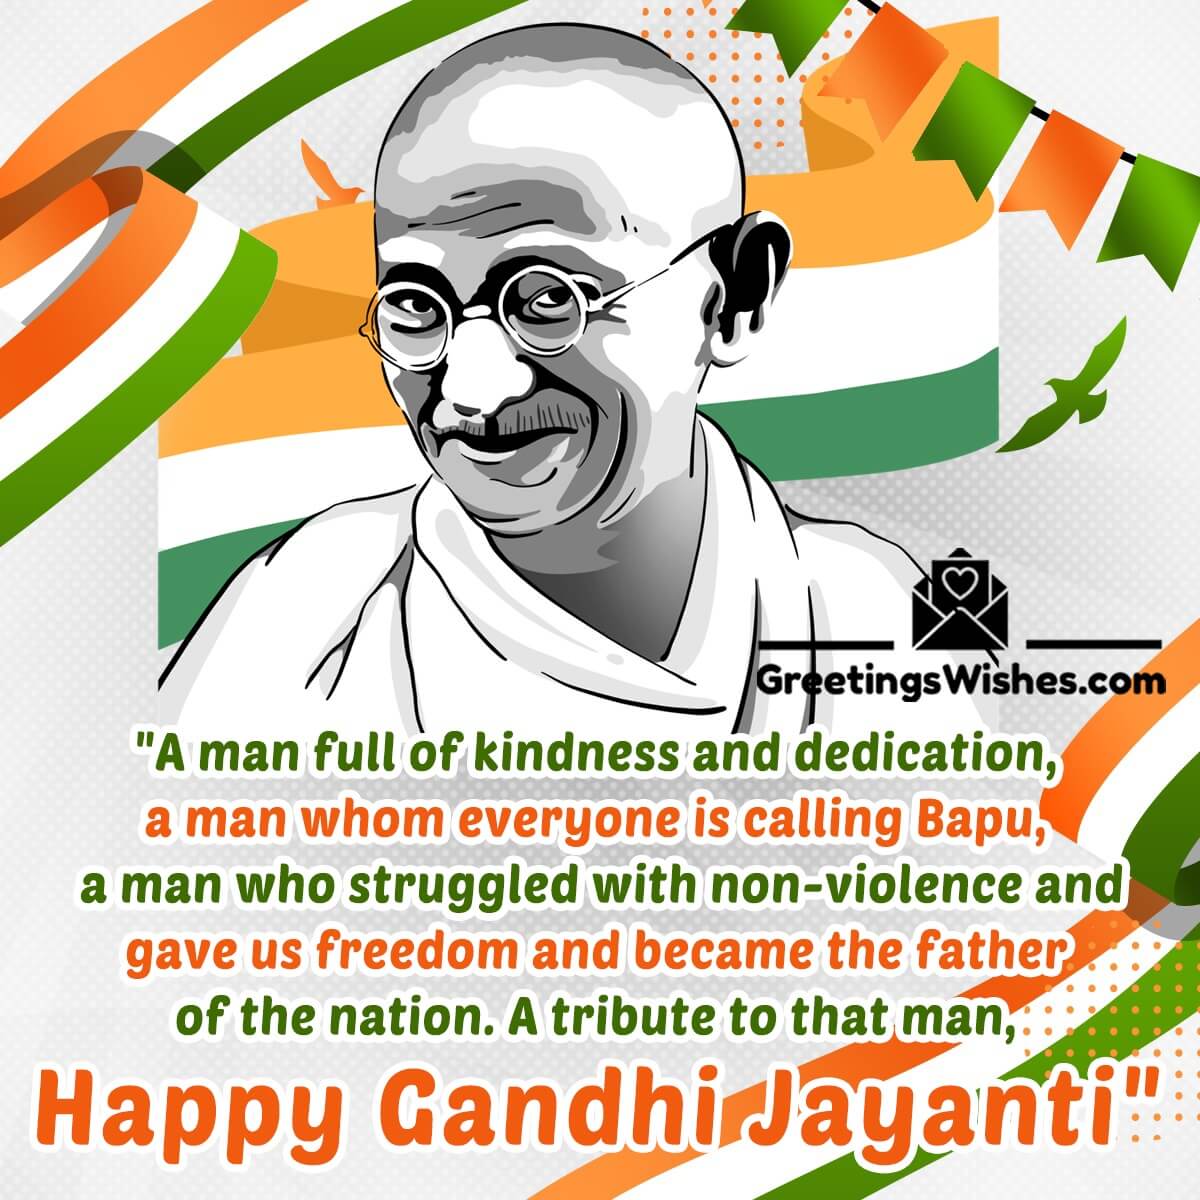 Happy Gandhi Jayanti Messages